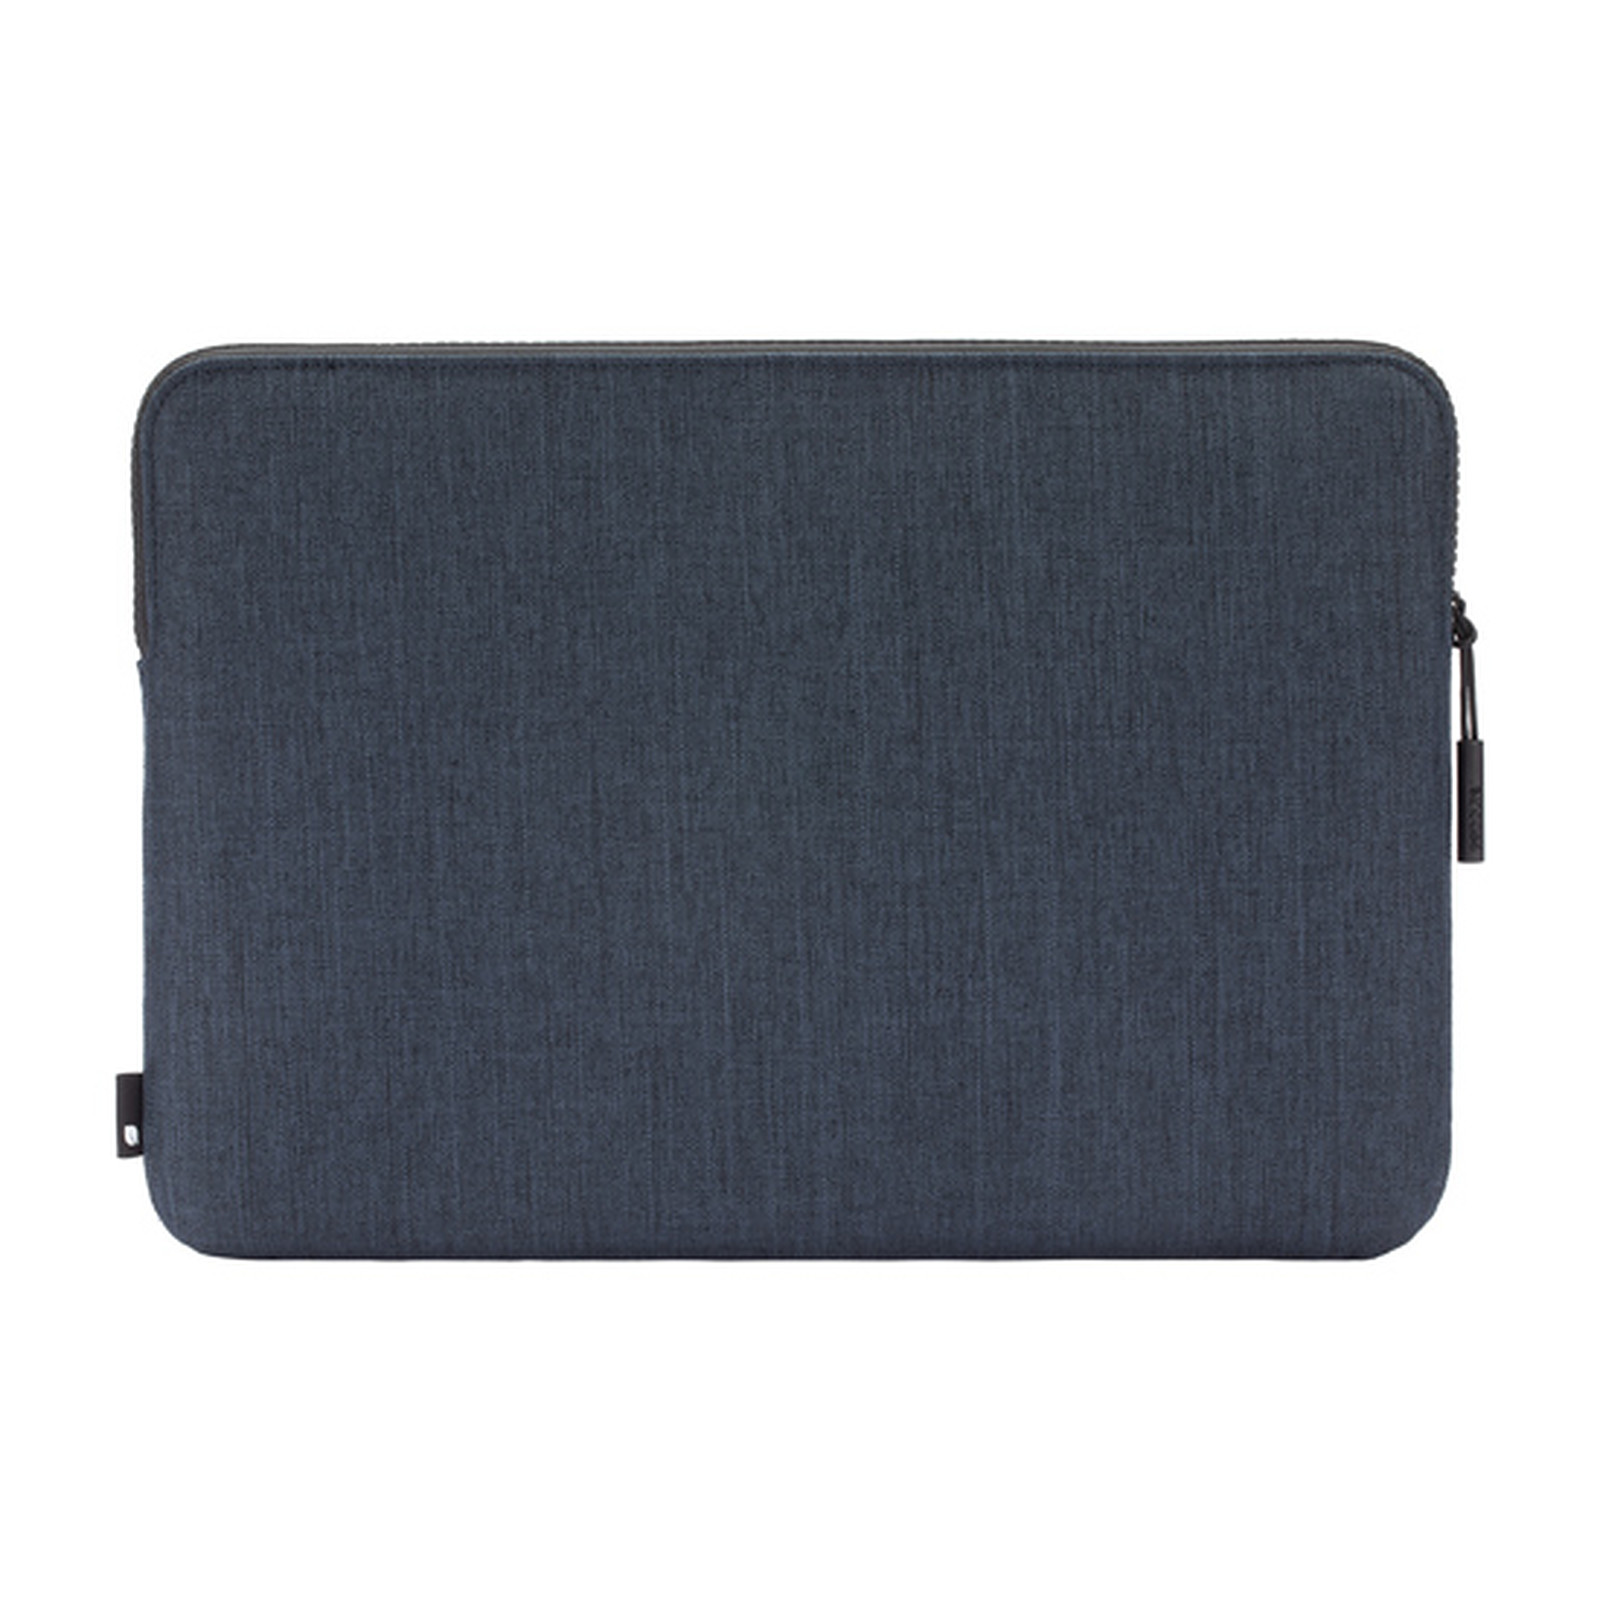 INCASE Housse compacte en Woolenex pour Macbook Pro 13 et Macbook Air Retina Navy - Accessoires Apple Incase